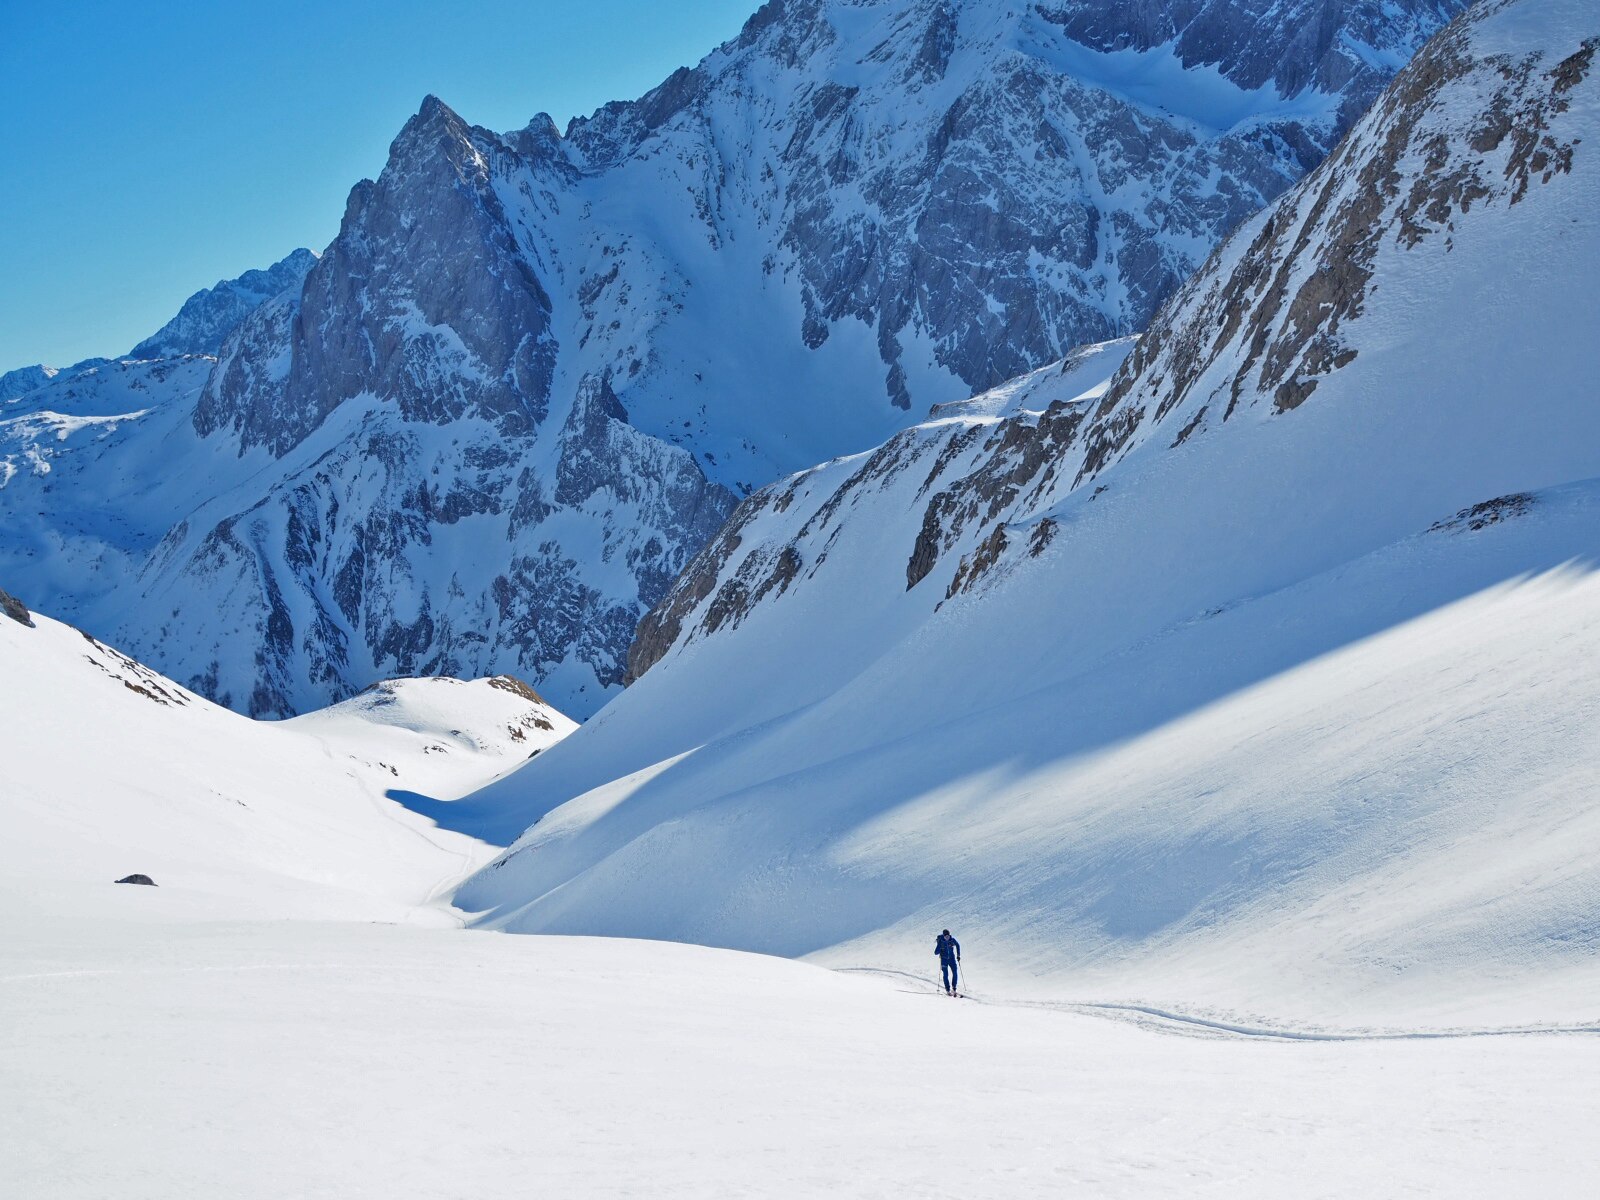 Sonne - Schatten, Wärme - Kälte – bei einer Skitour wechseln die Bedingungen schnell, daher muss die Kleidung schnell adaptiert werden.